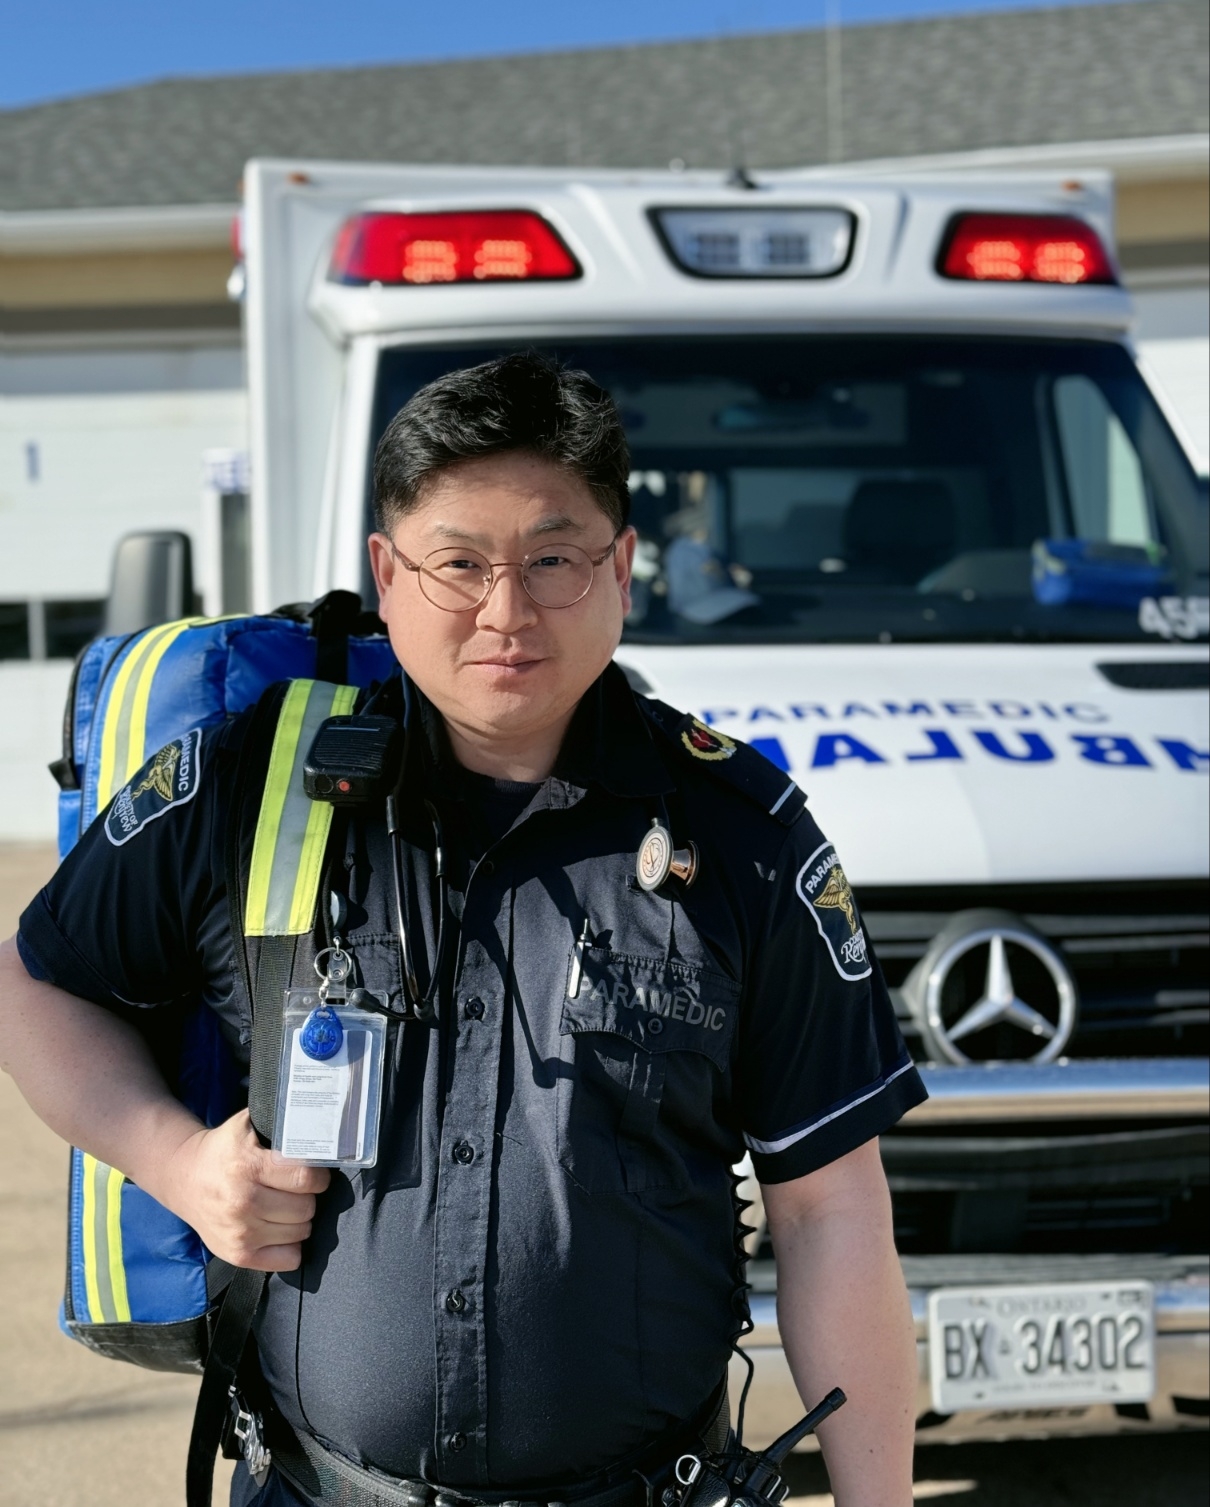 캐나다 온타리오주에서 응급구조사로 일하는 김준일씨가 장비를 챙겨 출동 준비를 하고 있다. 김준일씨 제공